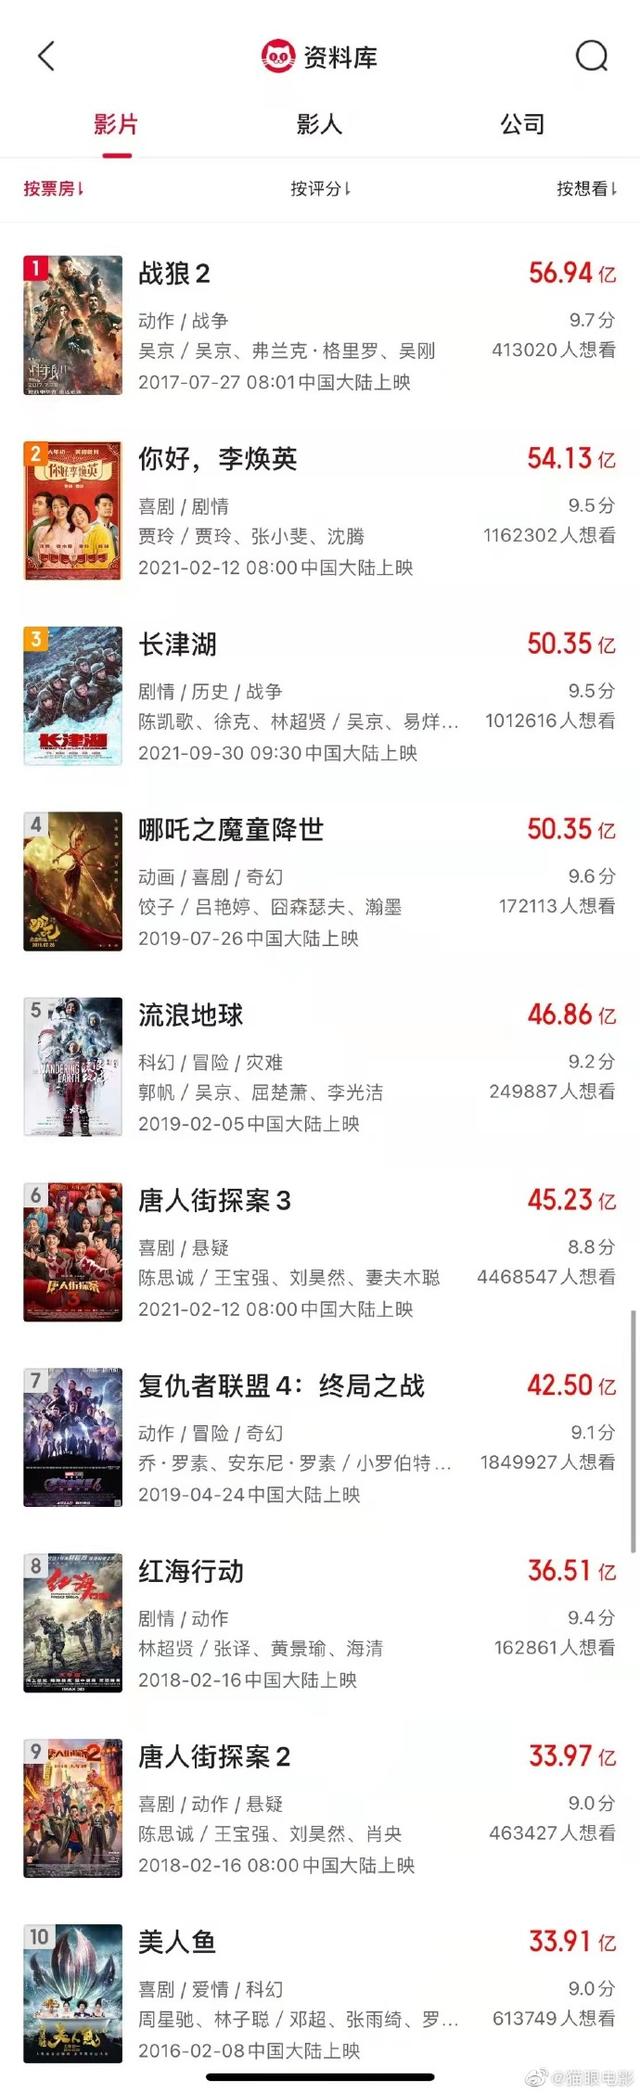 《长津湖》成中国影史票房第三，票房超50.35亿